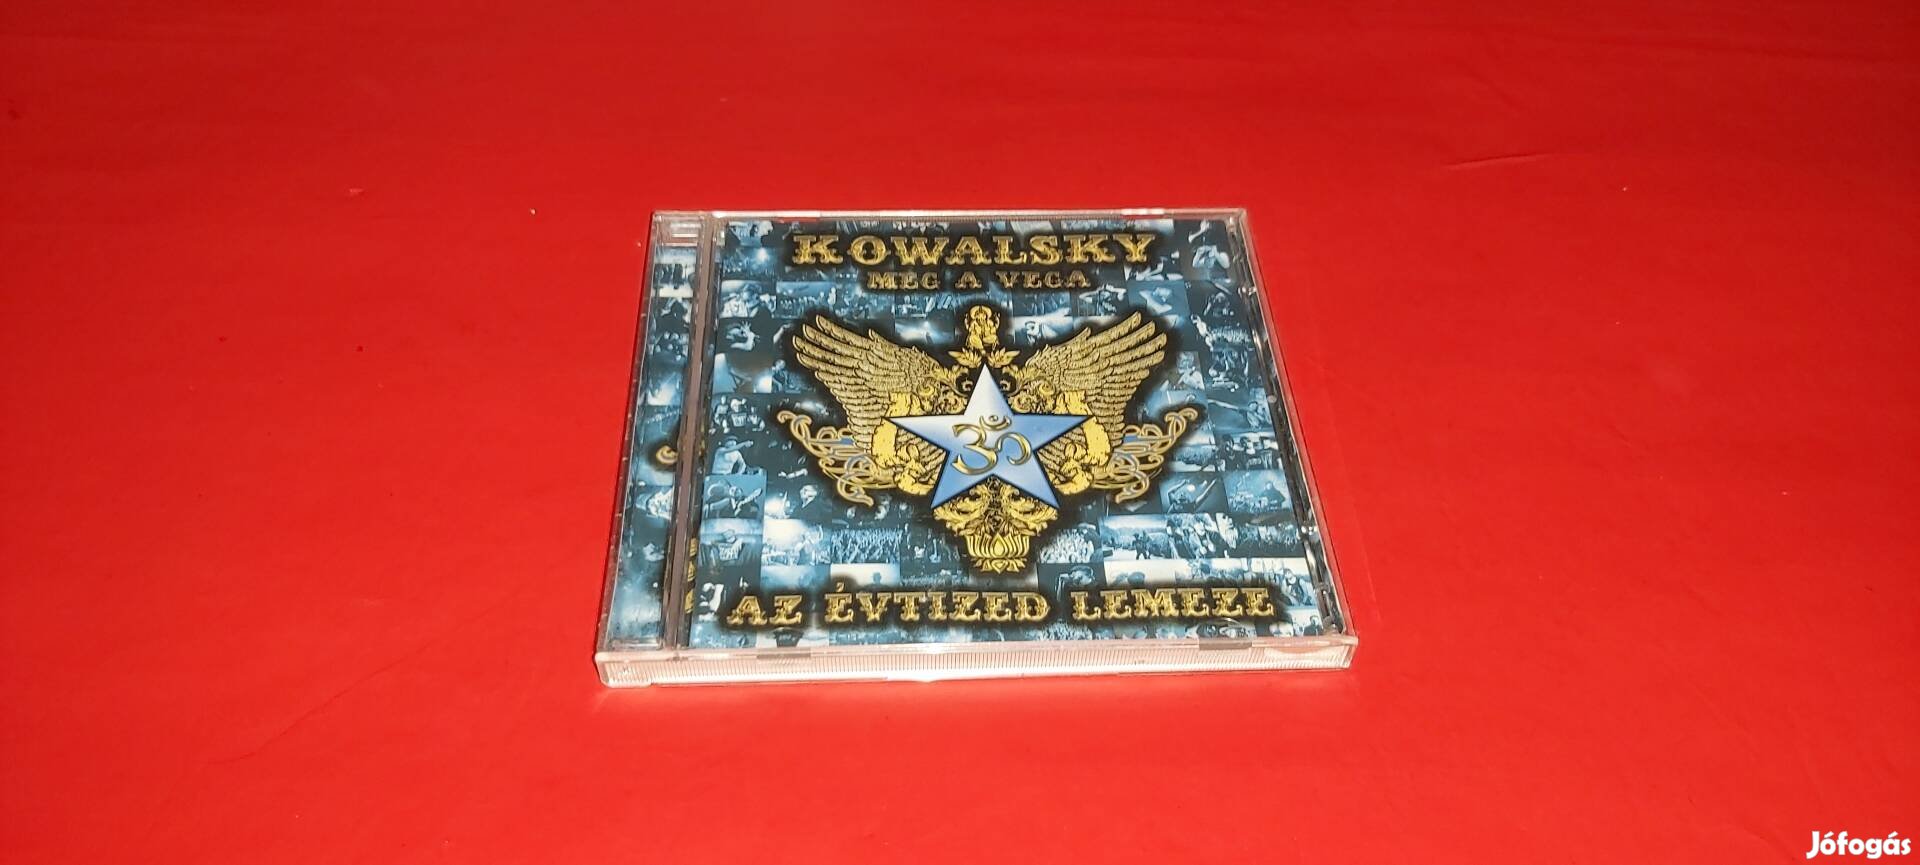 Kowalsky meg a Vega Az évtized lemeze dupla Cd 2011